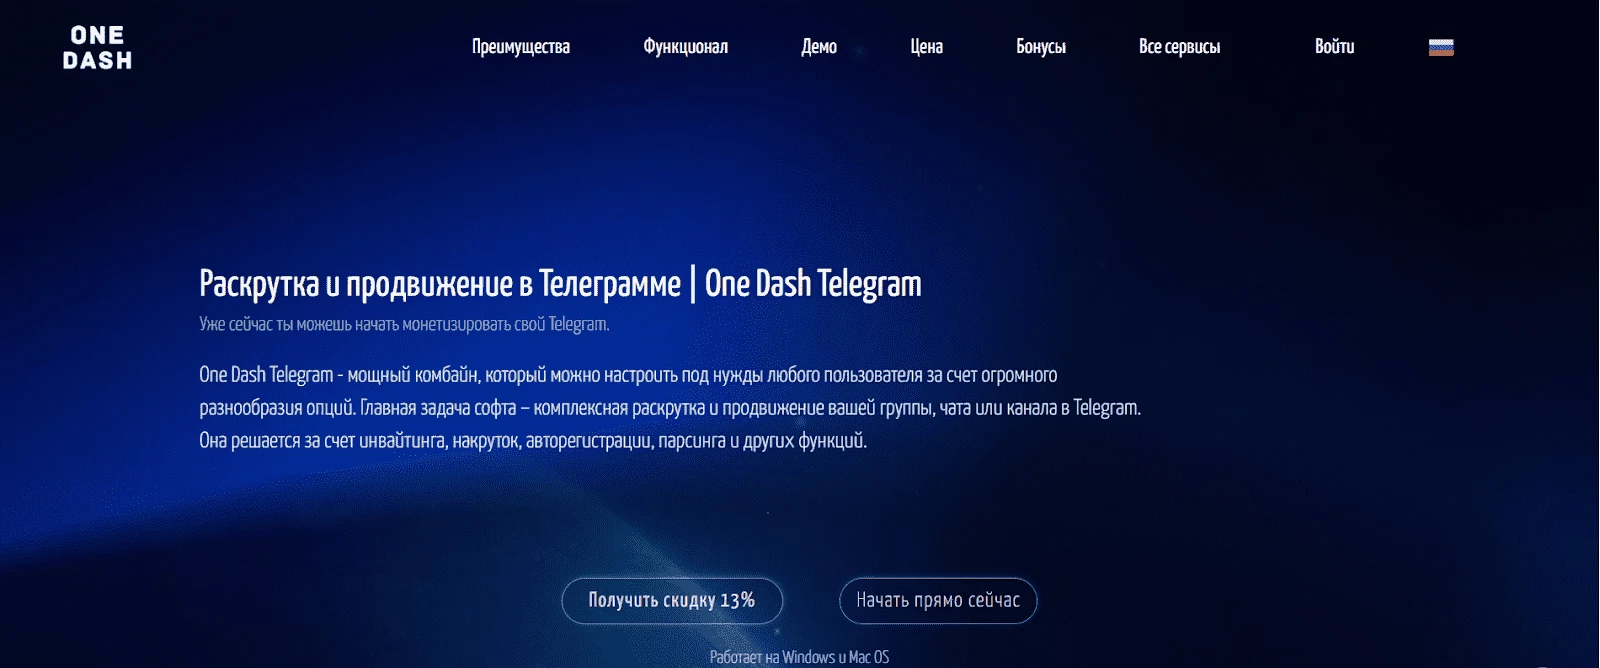 Сайт сервиса One Dash Telegram - сервиса для инвайтинга в Телеграм